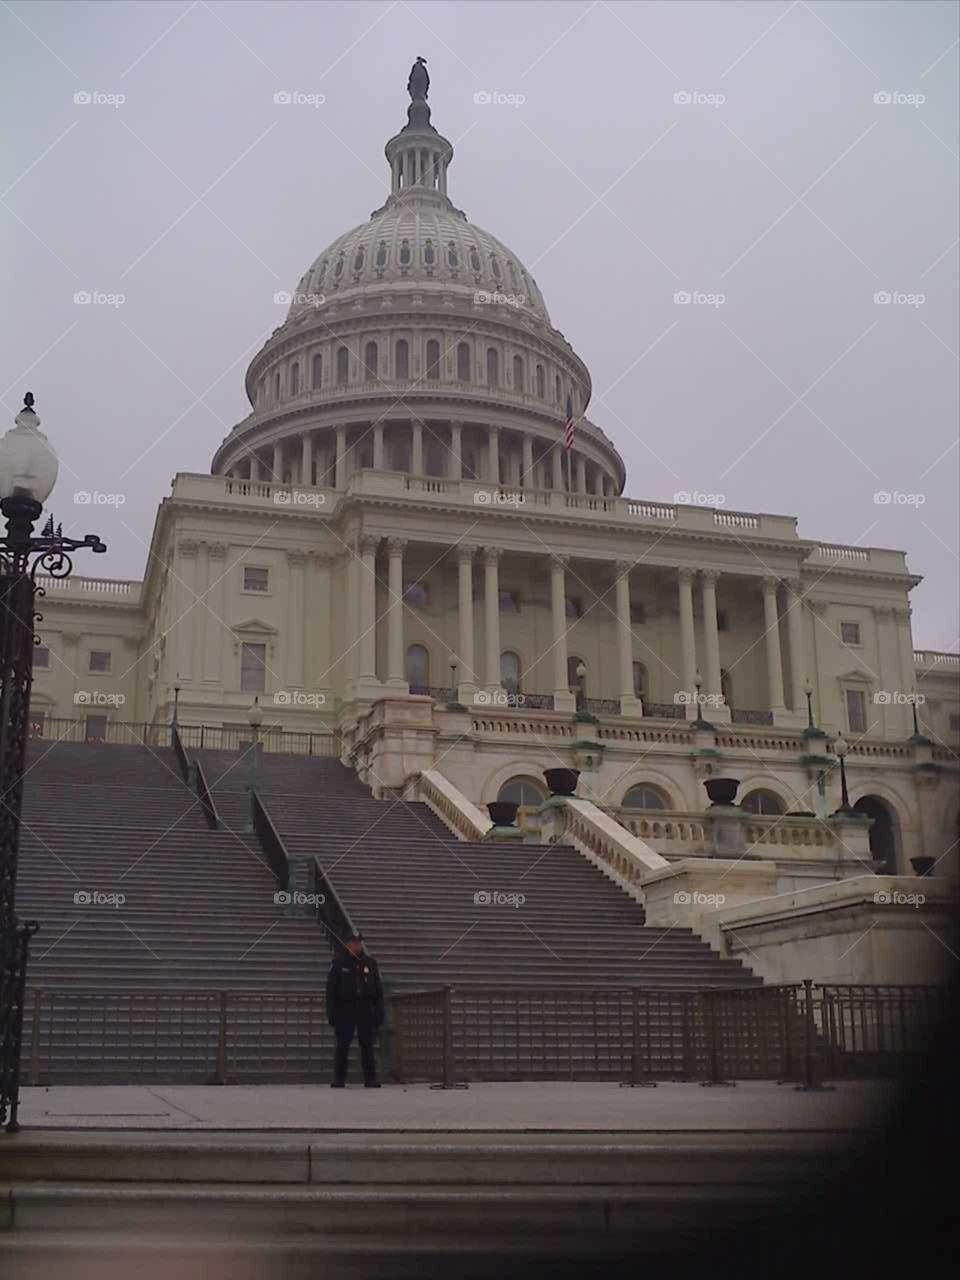 US Capitol. sightseeing, Washington D.C.